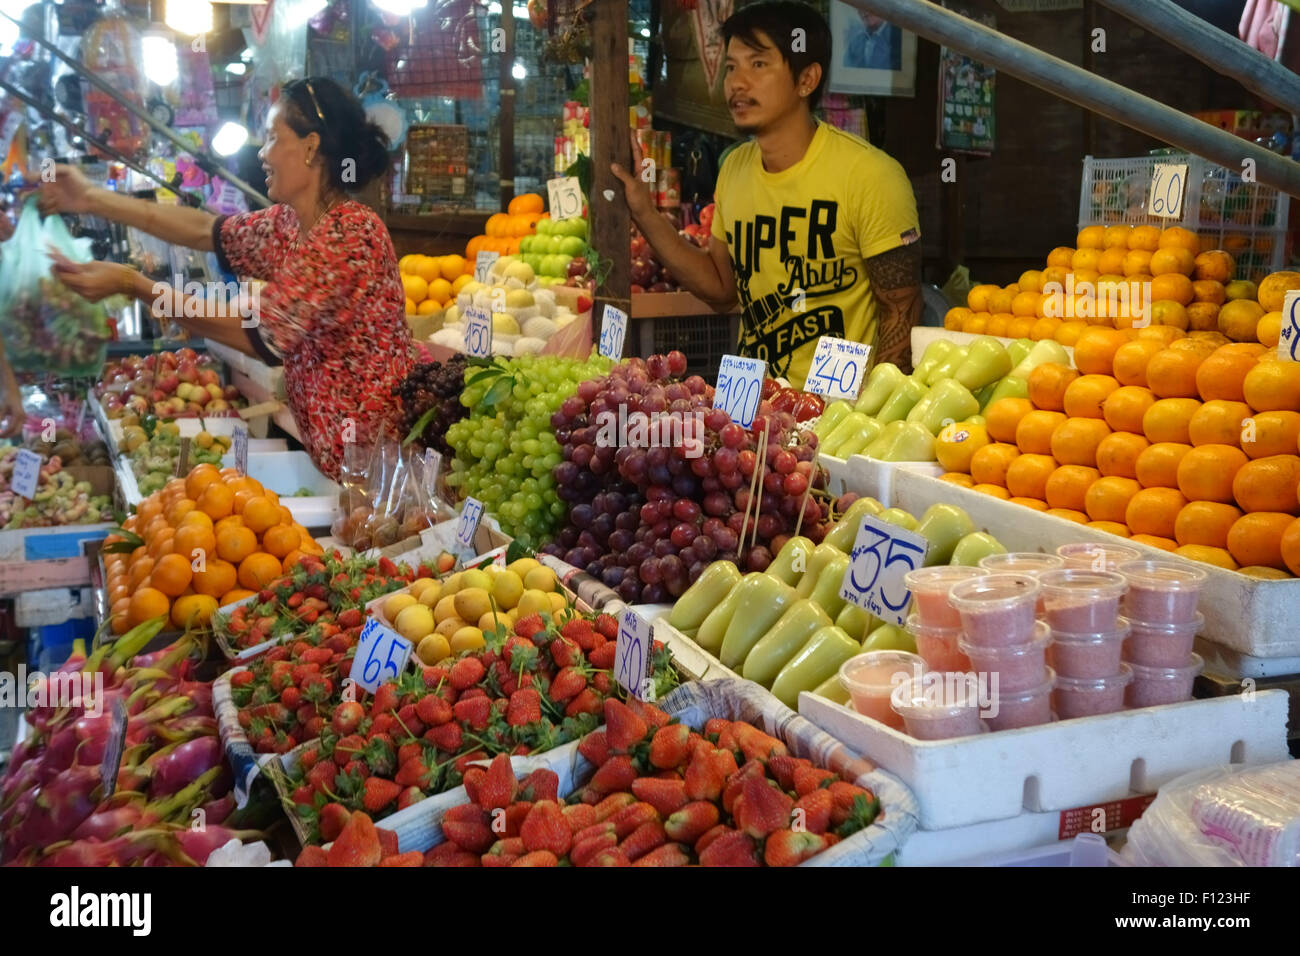 Étal de fruits dans un marché alimentaire de Bangkok avec des prix en baht thaïlandais et d'une femme à servir les clients, Thaïlande Banque D'Images